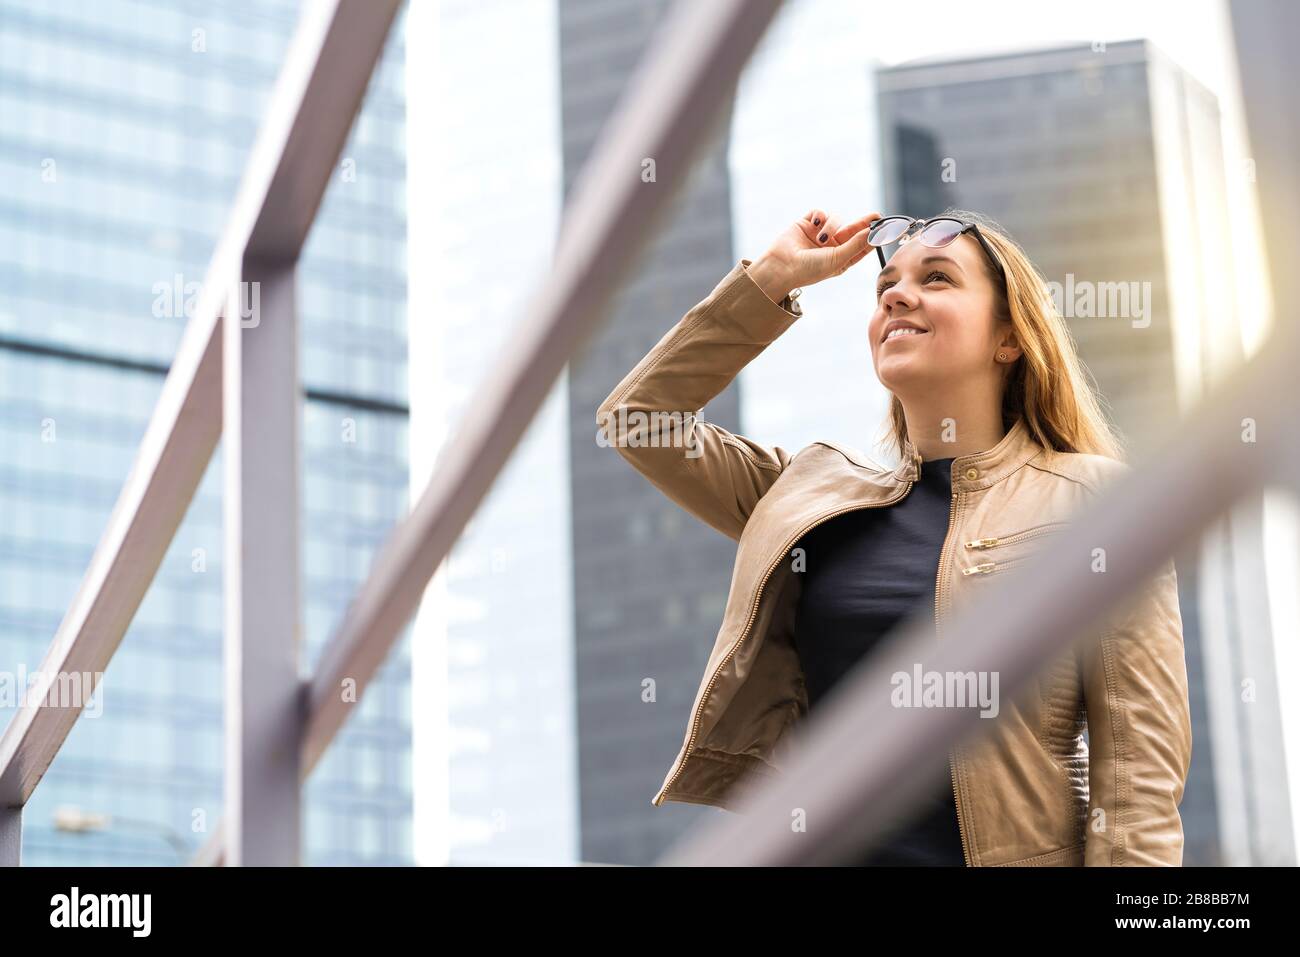 Femme souriante et heureuse dans la grande ville avec gratte-ciel. Personne soulevant des lunettes de soleil, regardant vers le haut et souriant. Style de vie urbain positif. Banque D'Images